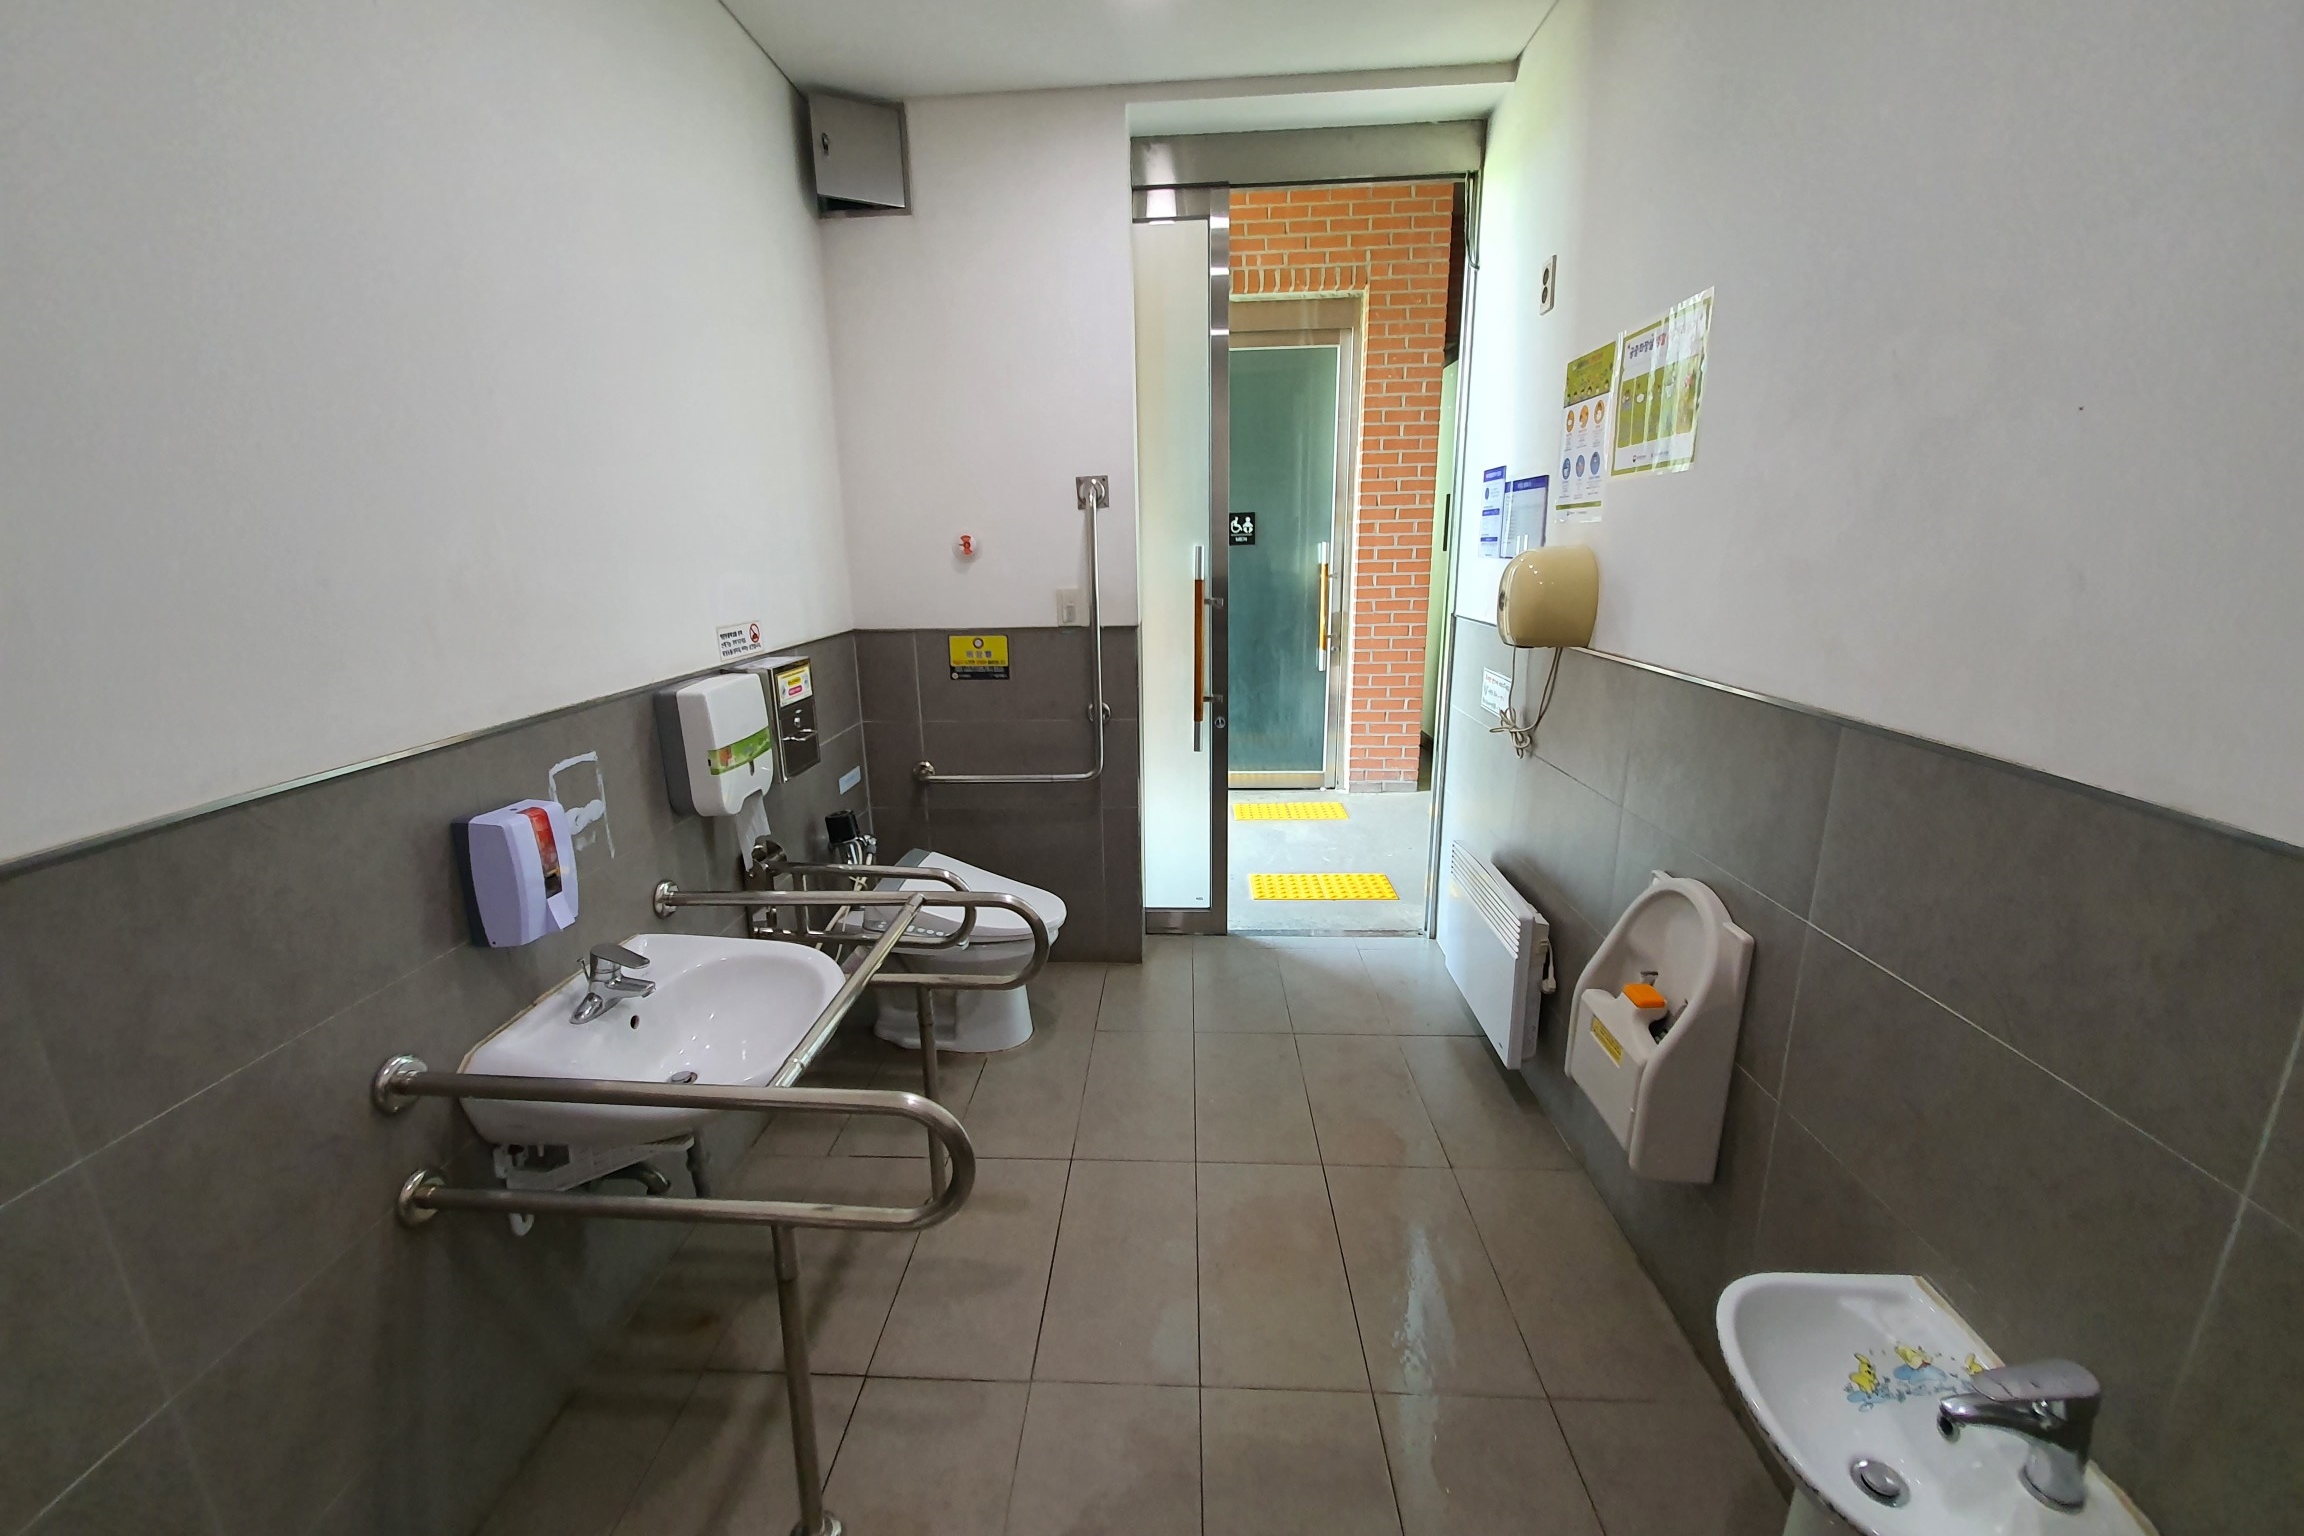 장애인 화장실0 : 넓은 공간의 푸른수목원 장애인화장실 전경